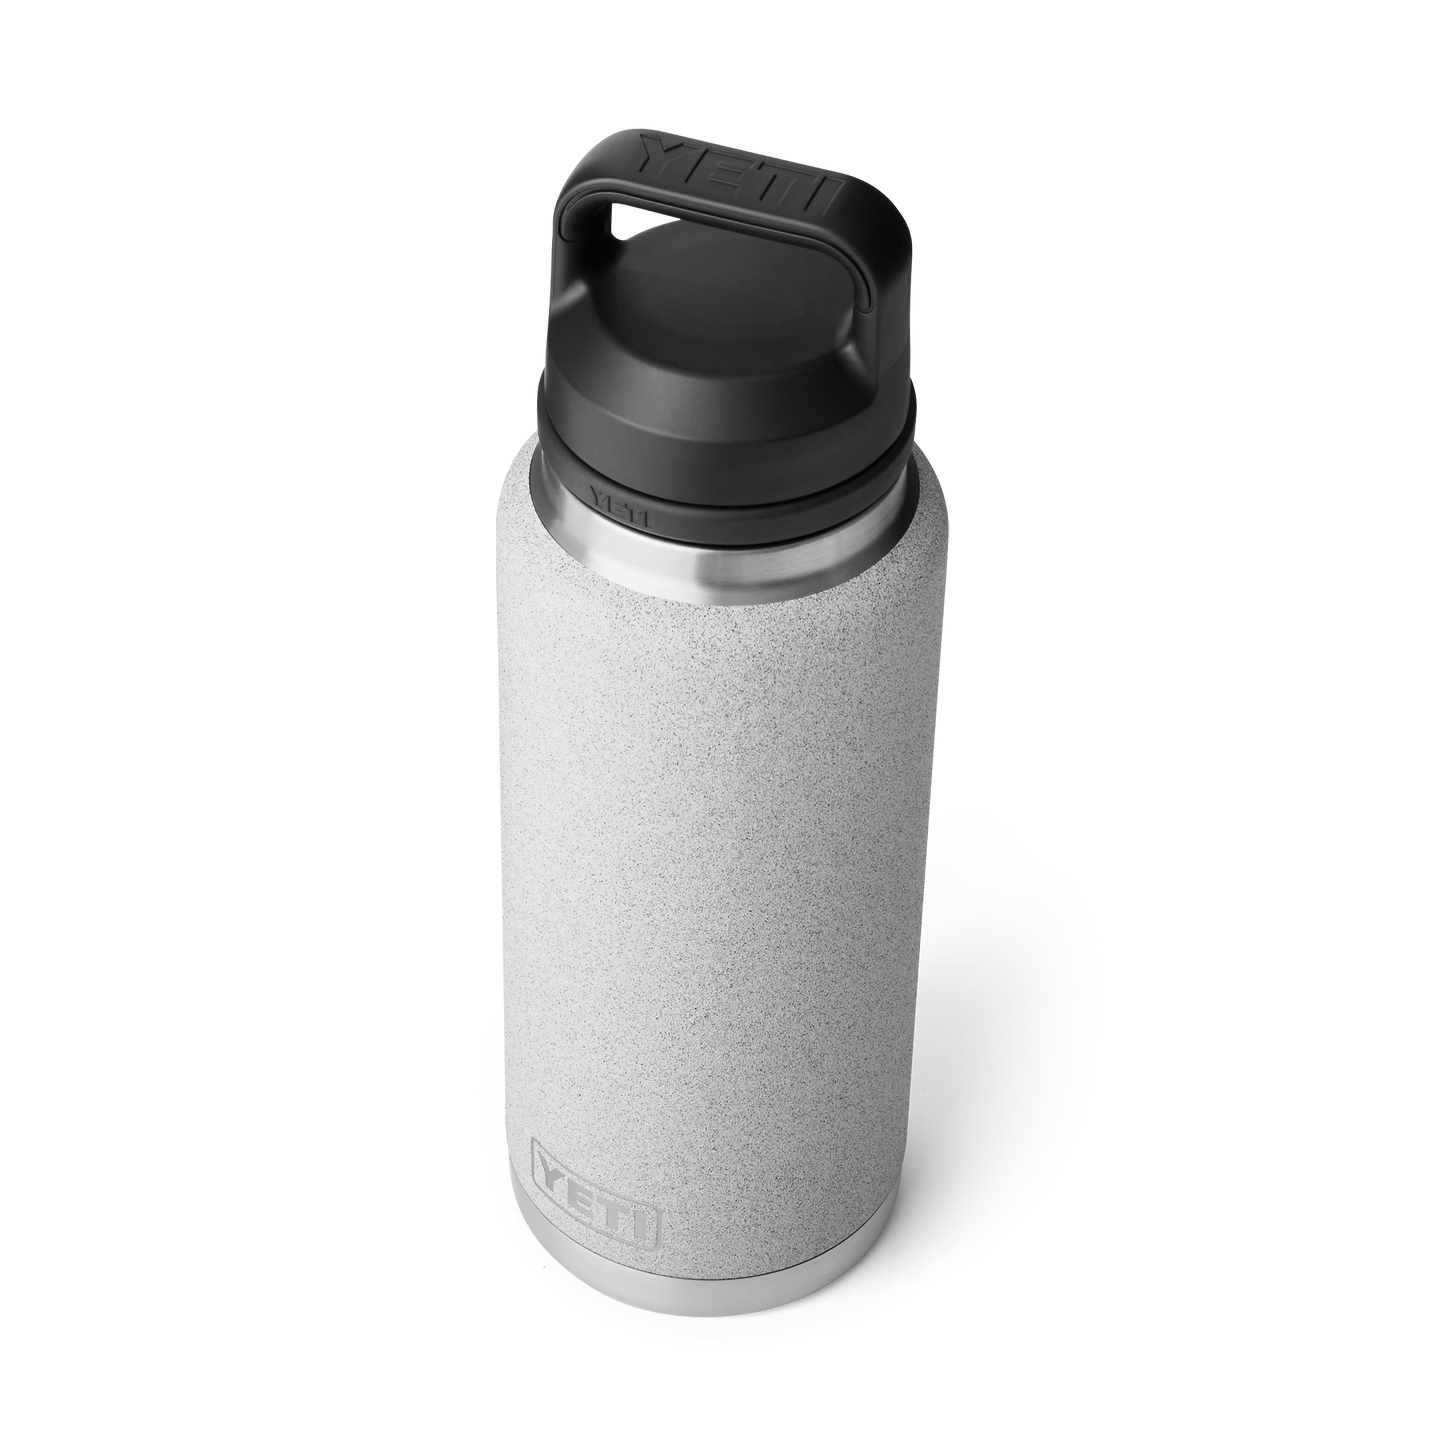 YETI Rambler® 36 oz Flasche mit Chug-Verschluss (1065 ml) Grey Stone